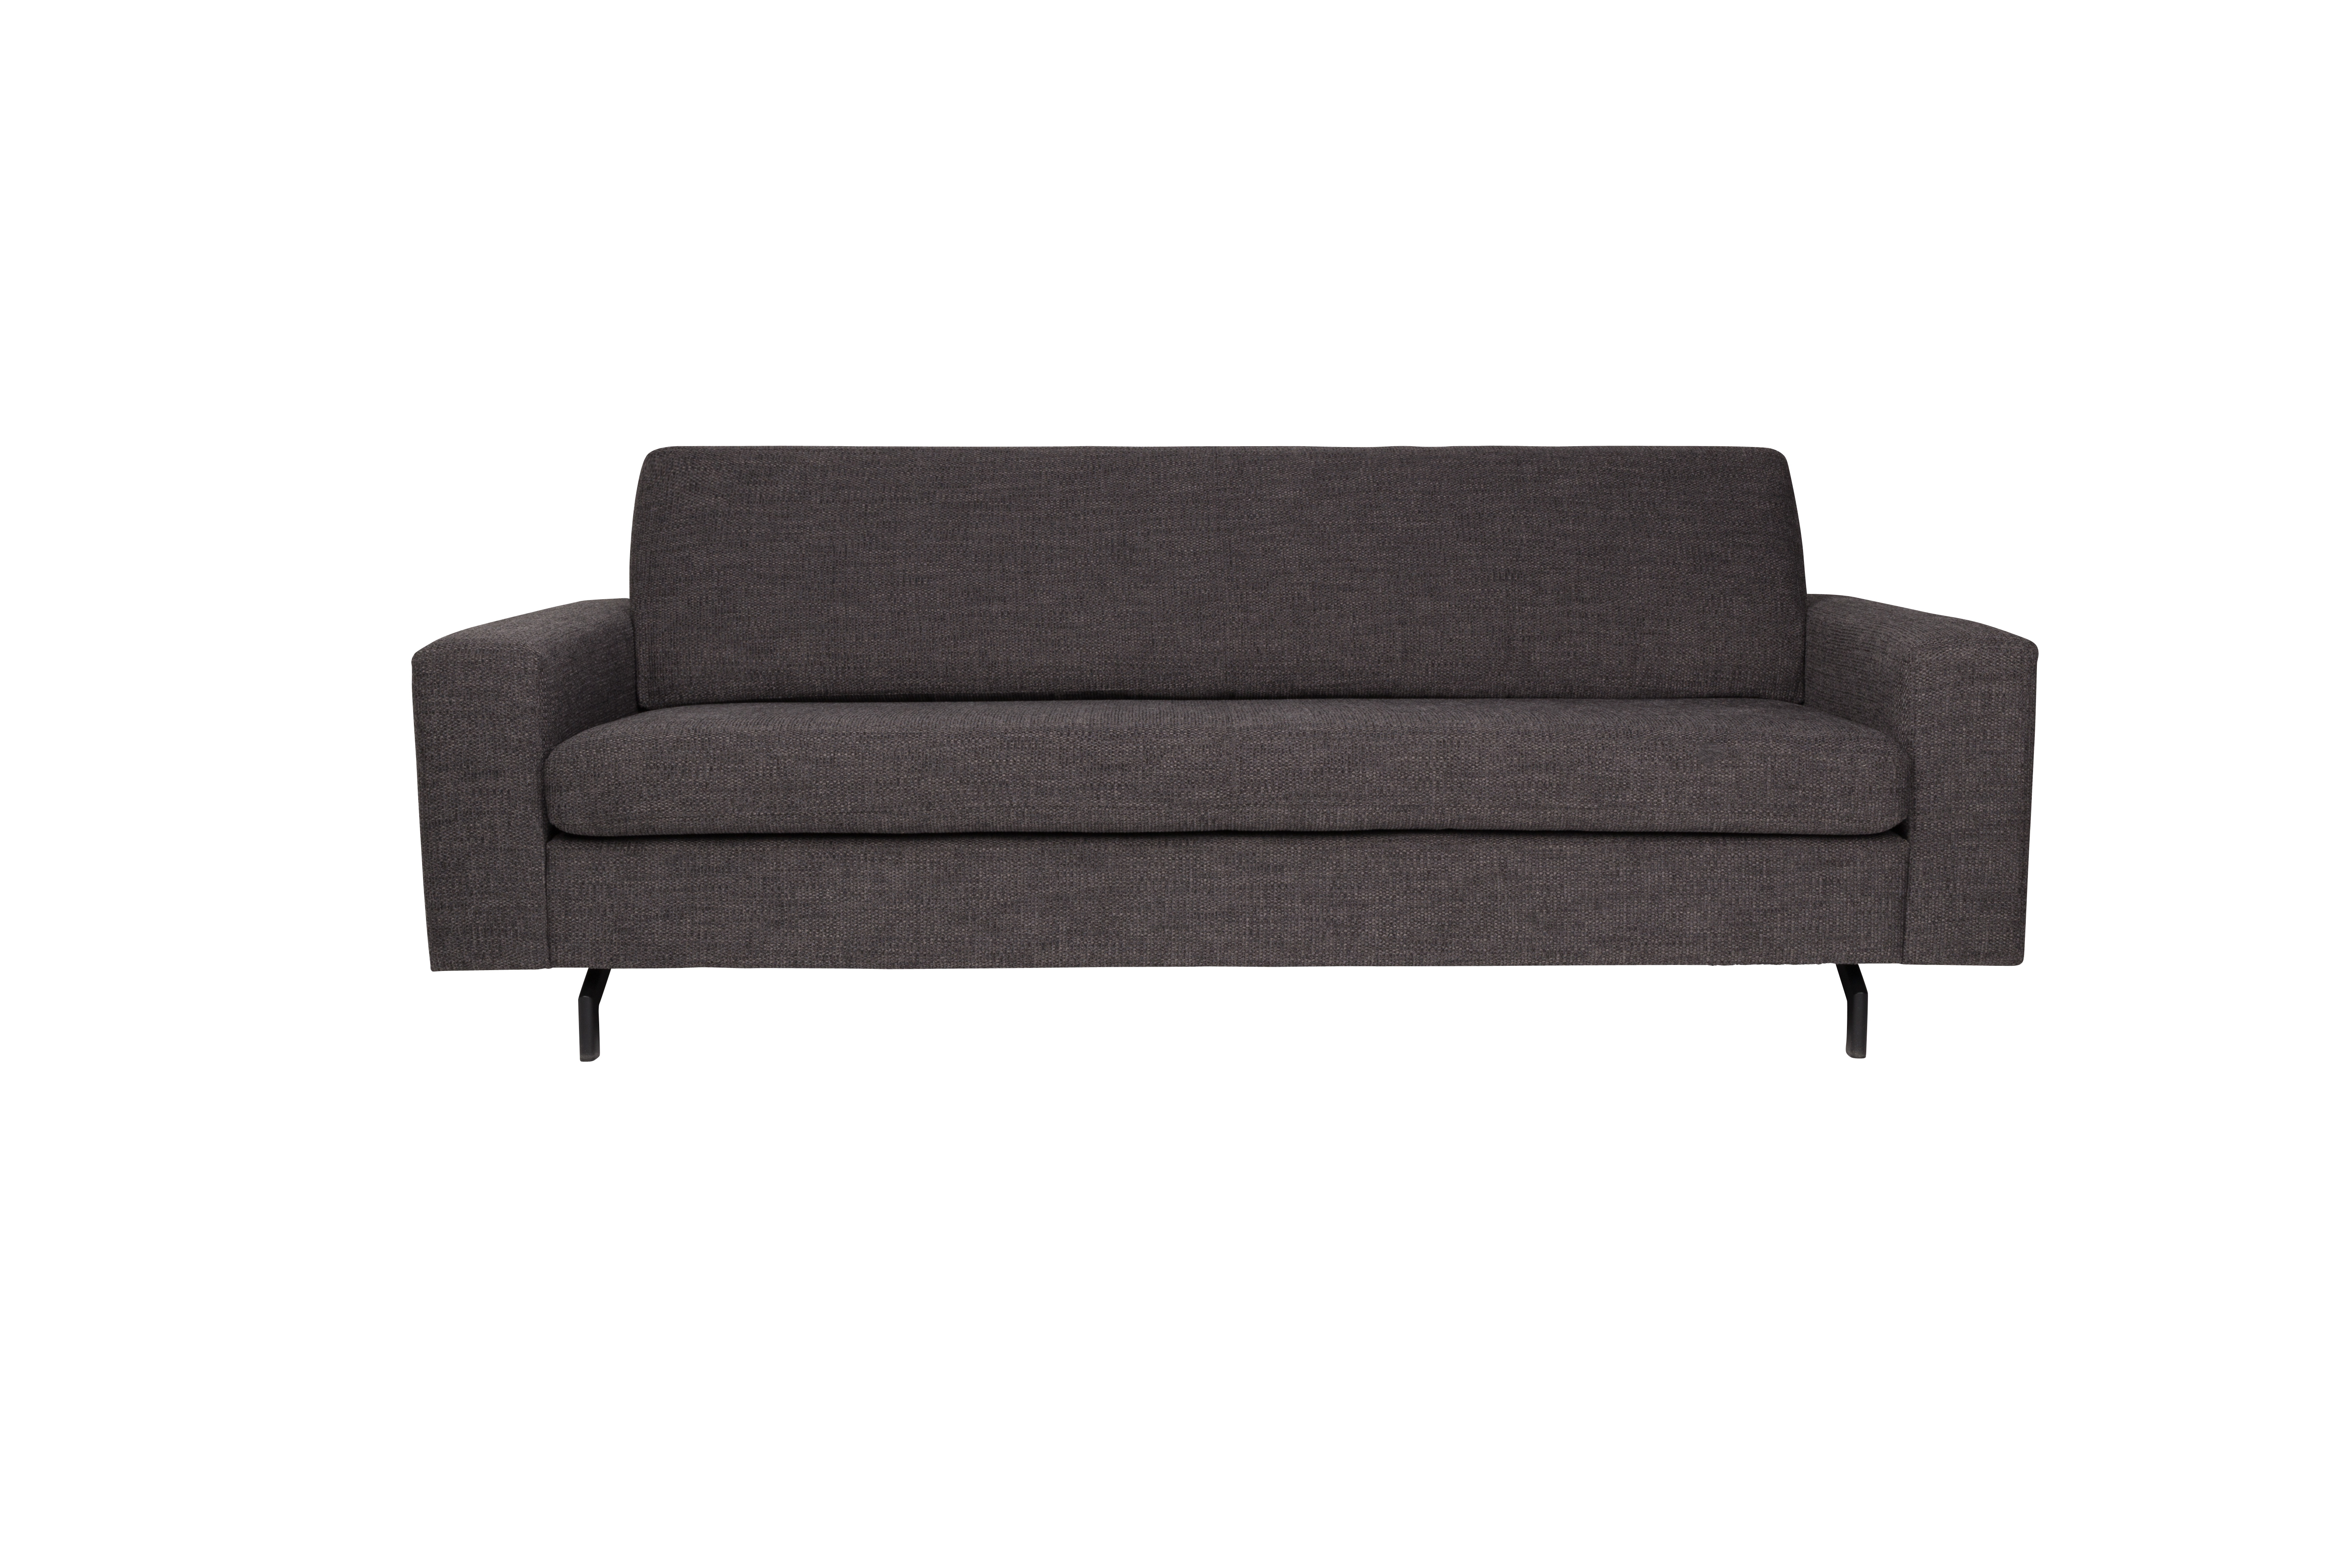 ZUIVER Jean 2,5-personers sofa – antracitgrå polyester og stål